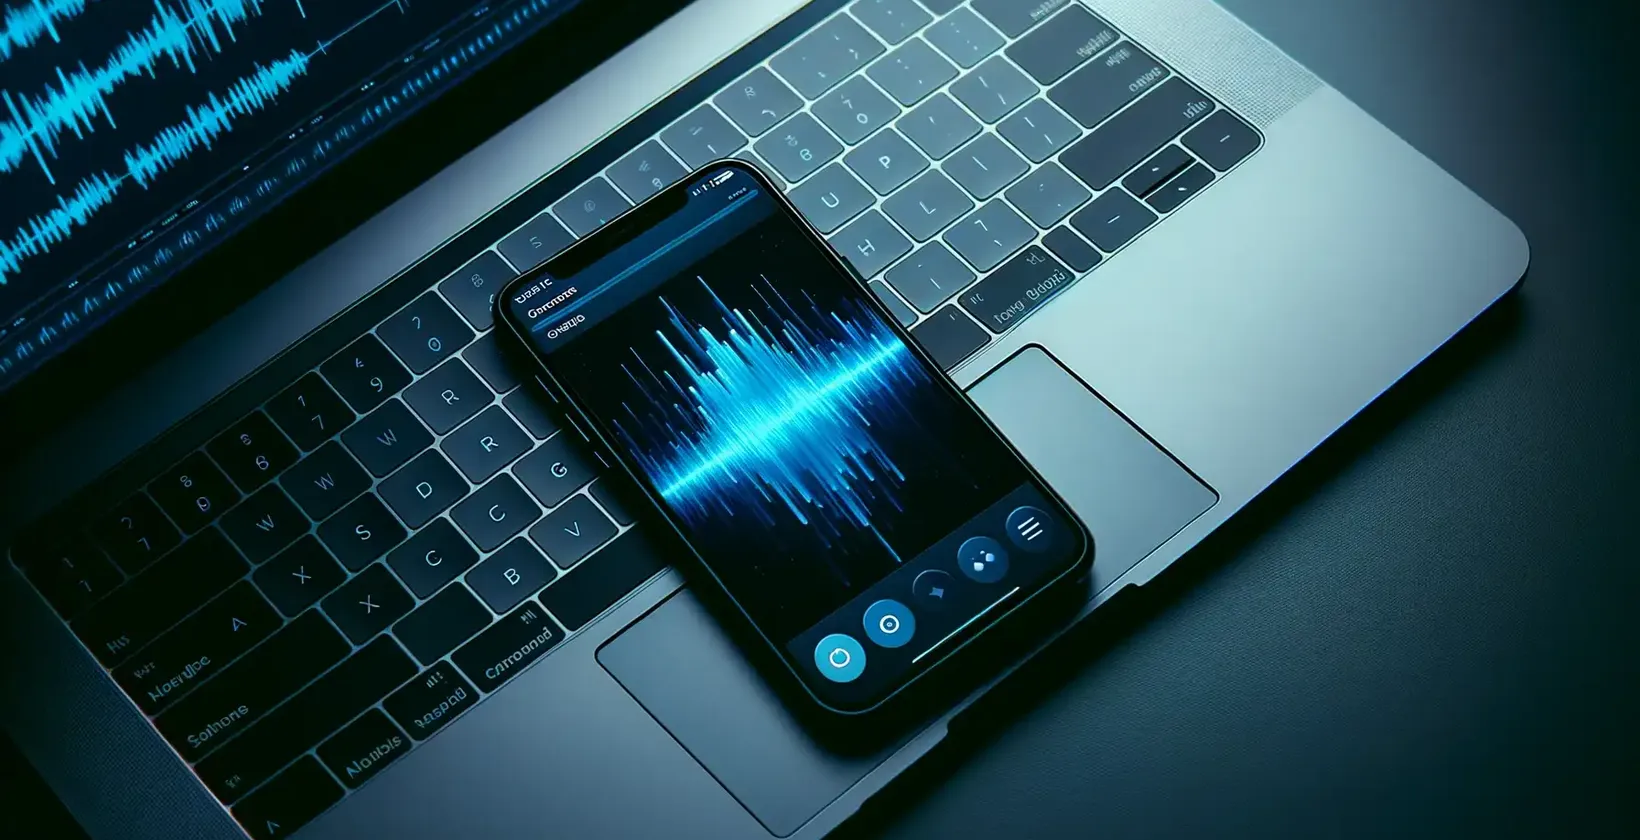 Pohľad zblízka na iPhone zobrazujúci živé zvukové krivky vedľa podsvietenej klávesnice notebooku